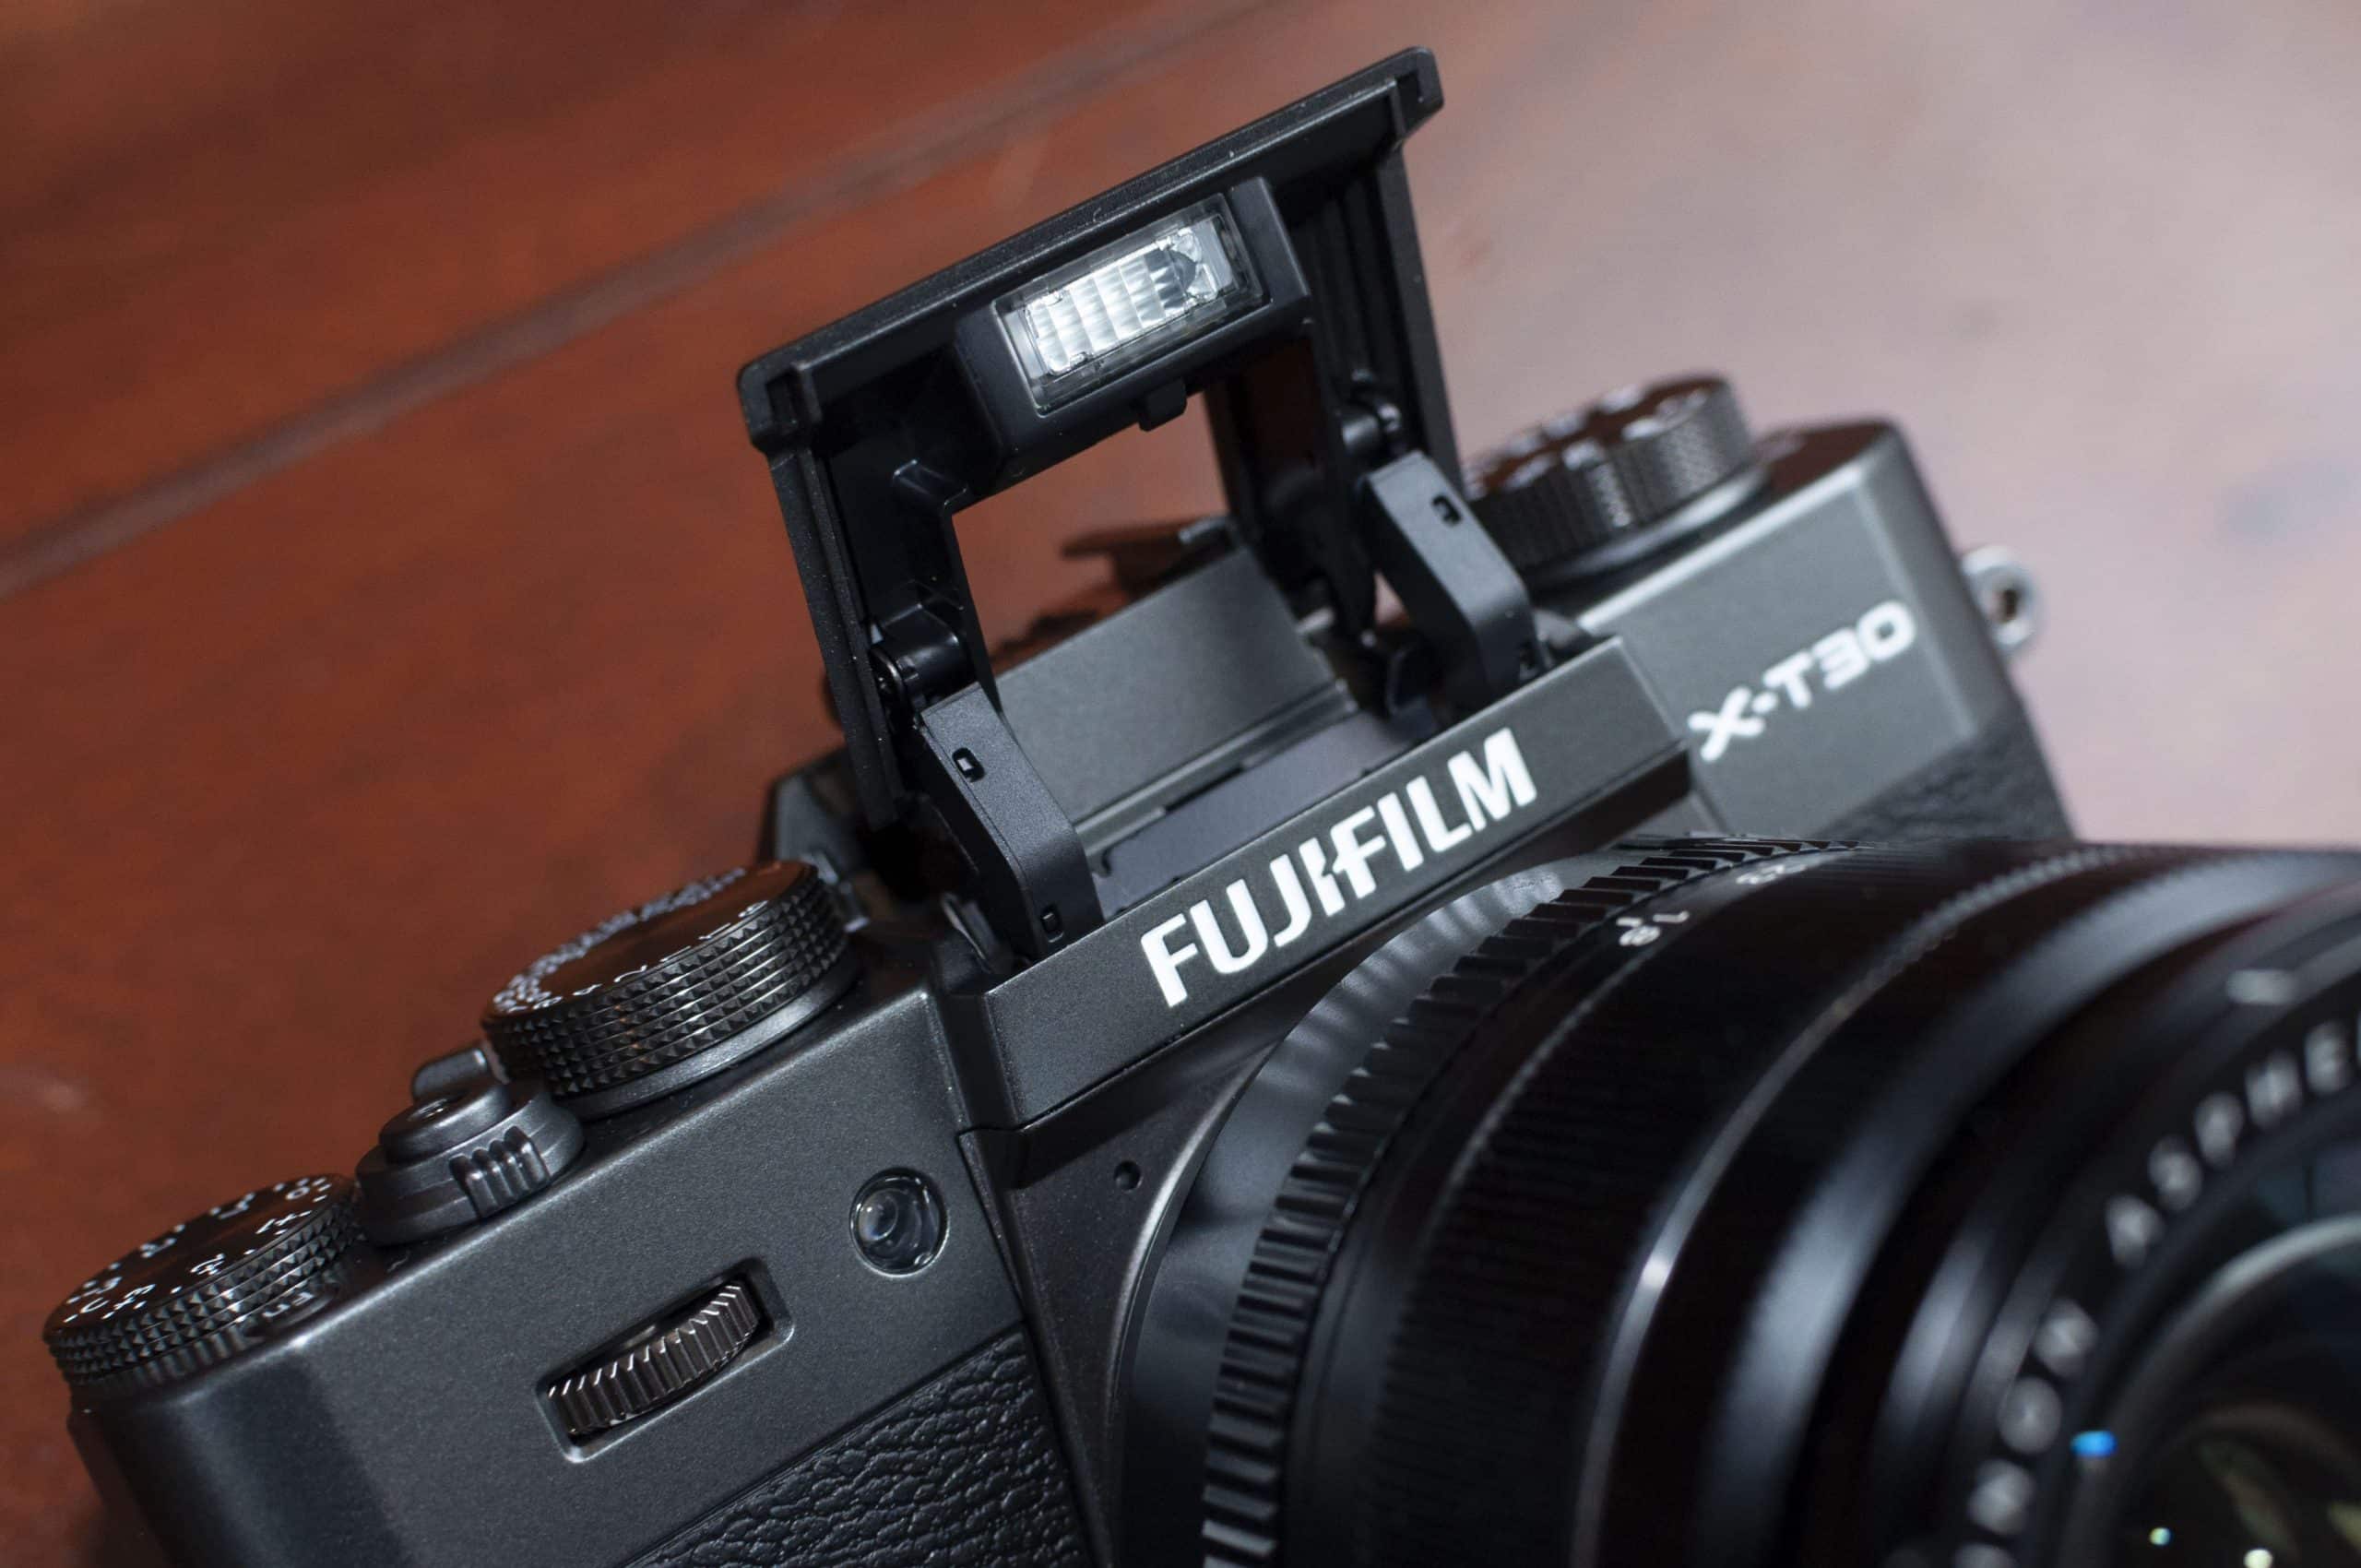 Fujifilm X-T30 II và X-T3 WW bán chính hãng tại Việt Nam với giá 21,990,000đ và 25,990,000đ